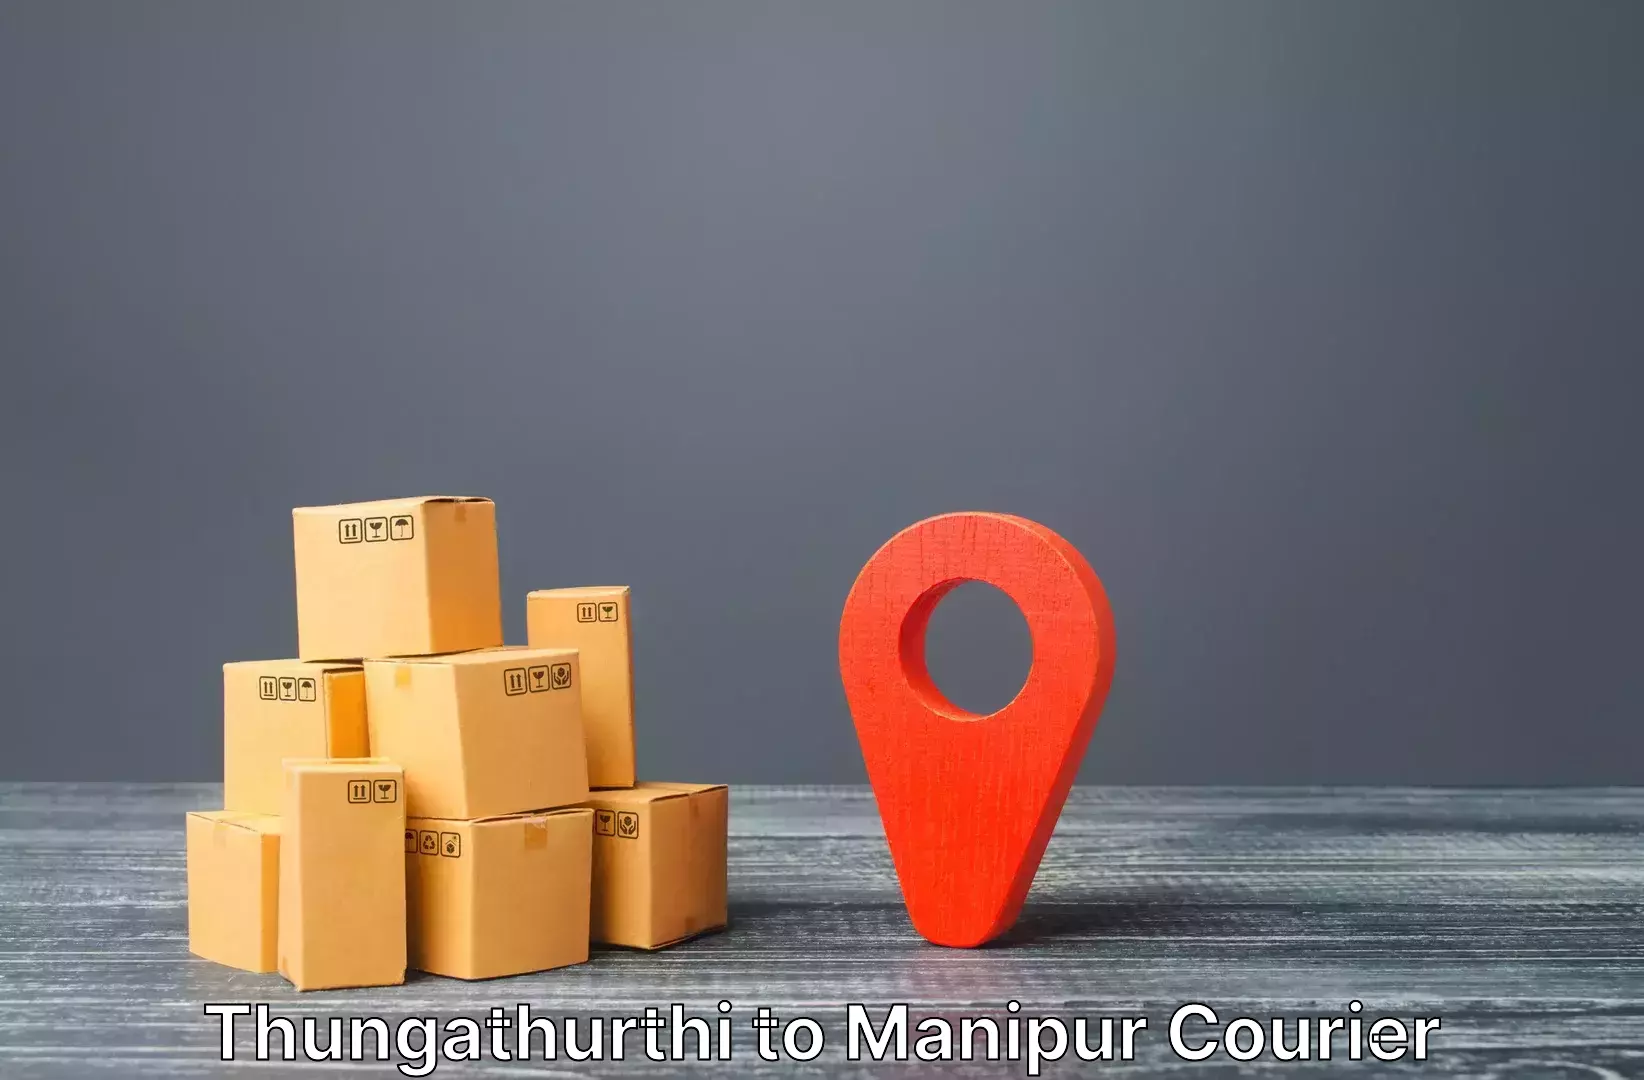 Luggage transport service Thungathurthi to Kanti